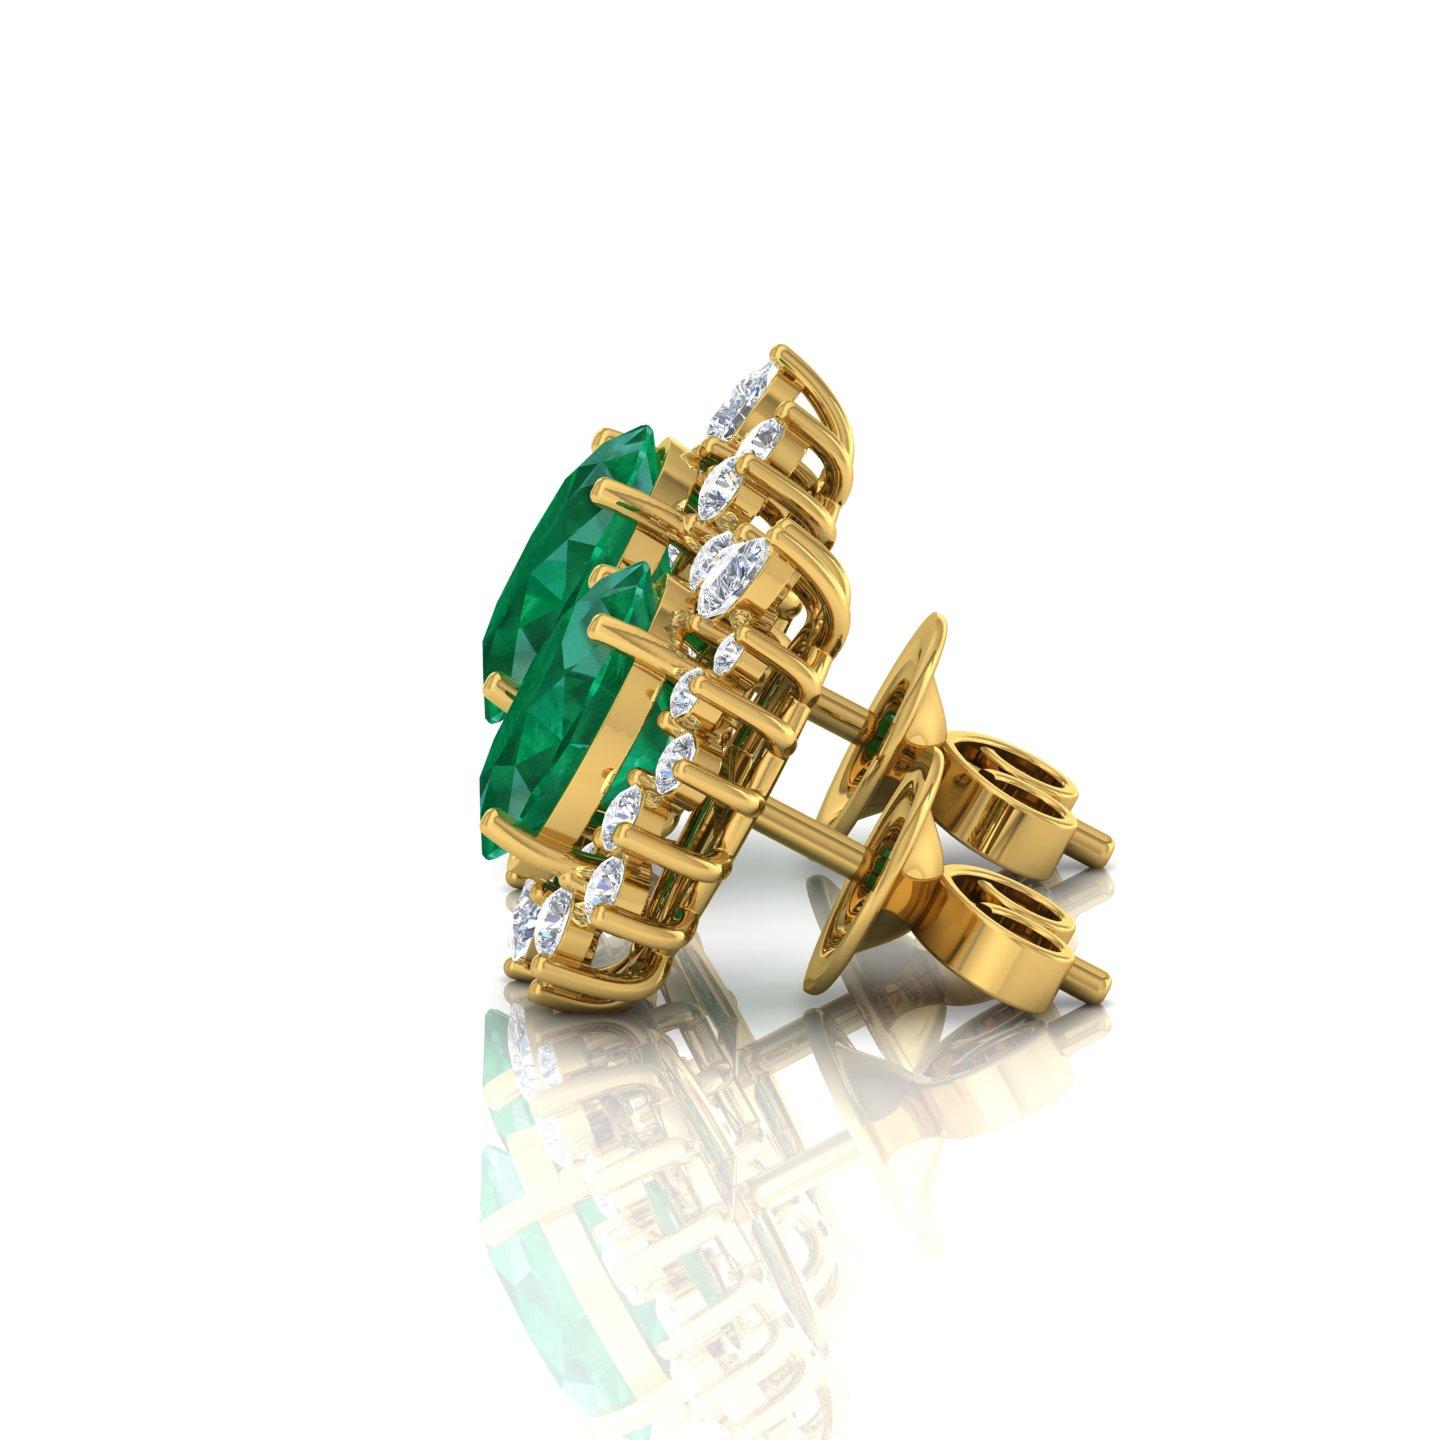 Modern Oval Zambian Emerald Gemstone Earrings Diamond 18 Karat Yellow Gold Fine Jewelry For Sale